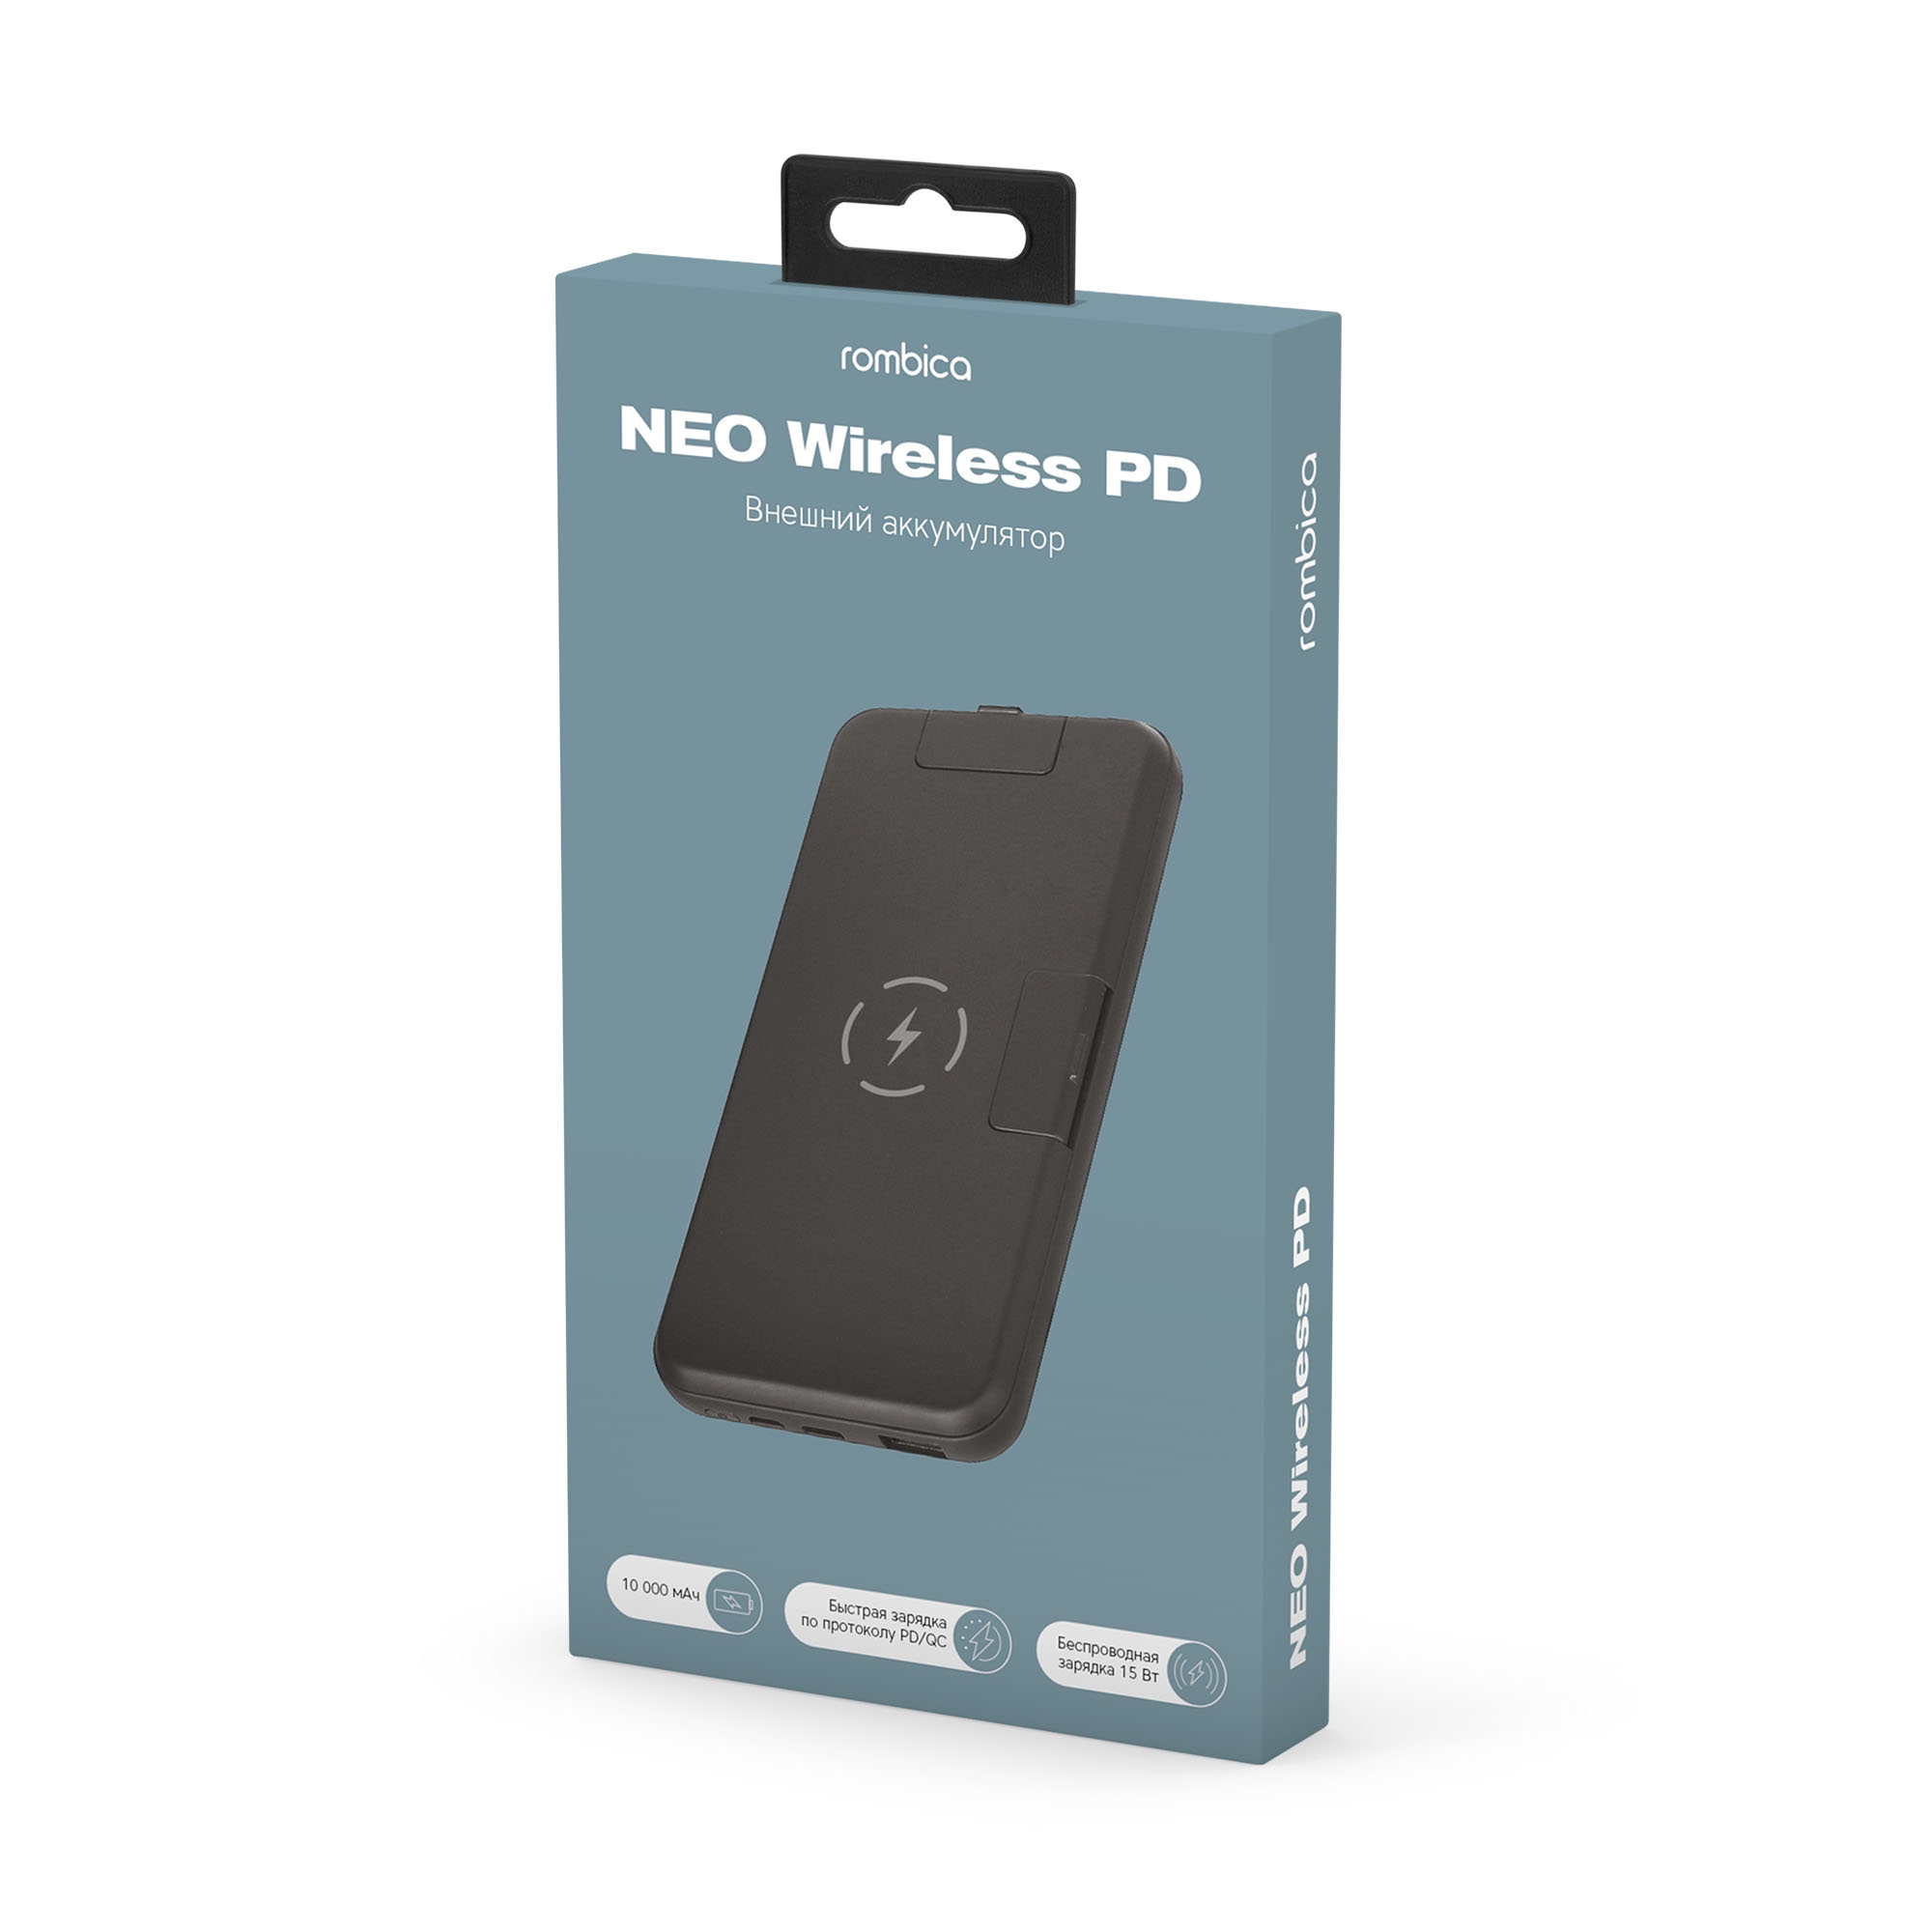 ПЗУ Rombica NEO Wireless PD, черный, черный